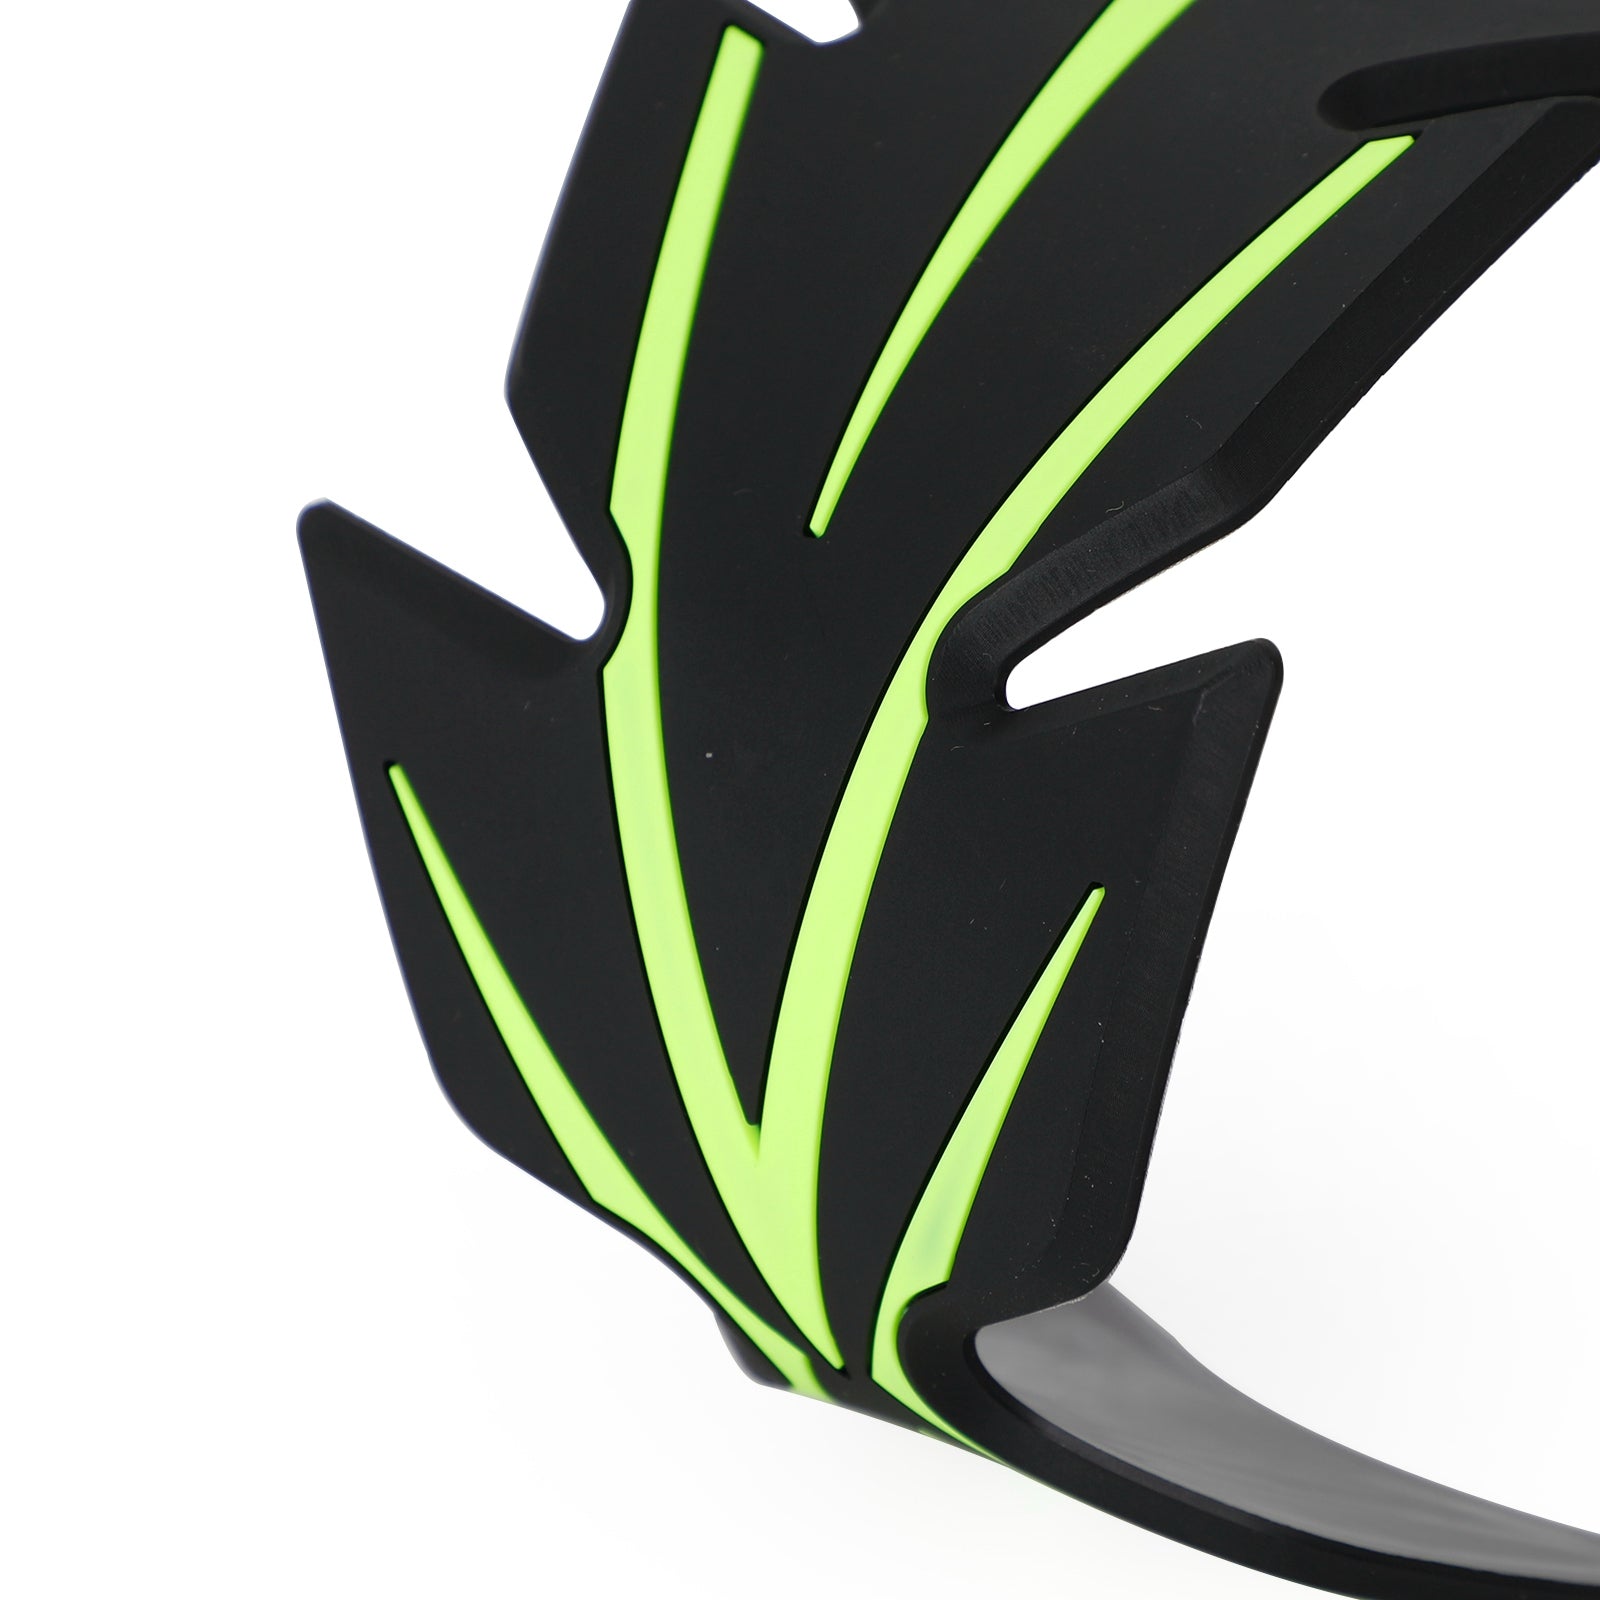 Decalcomania protettiva in gomma per protezione serbatoio moto nero verde per Kawasaki Ninja